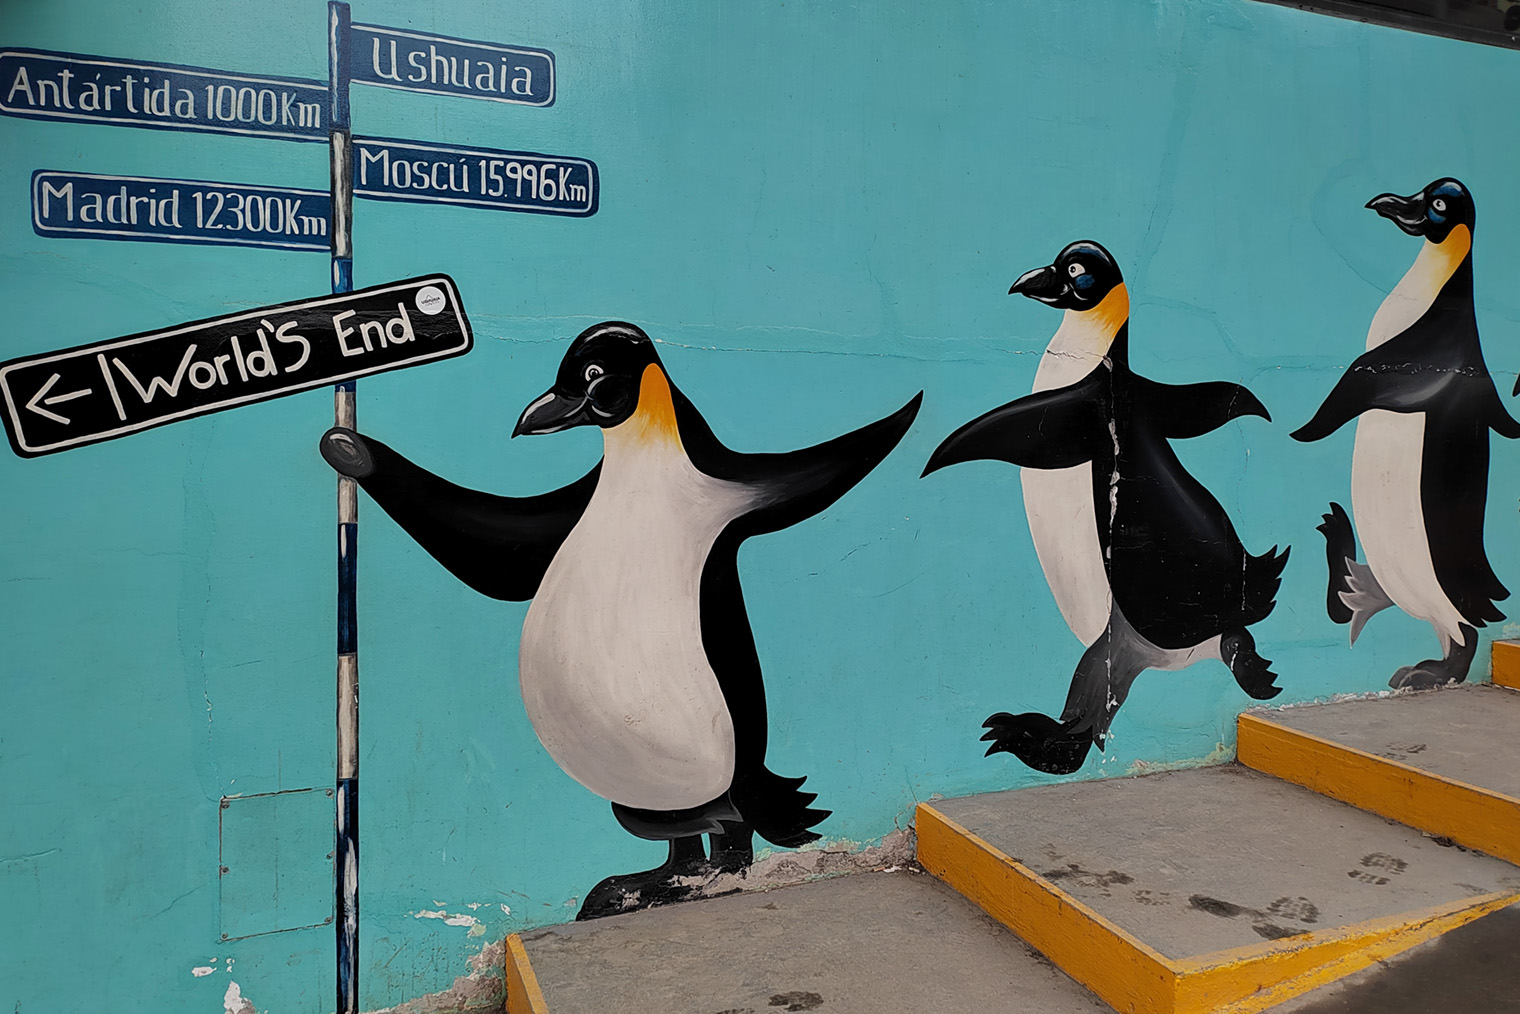 Неподалеку от Ушуайи путешественники знакомятся с магеллановыми и королевскими пингвинами. В городе этих красивых птиц можно увидеть на таком граффити с указателем расстояний до Антарктиды, Мадрида и Москвы